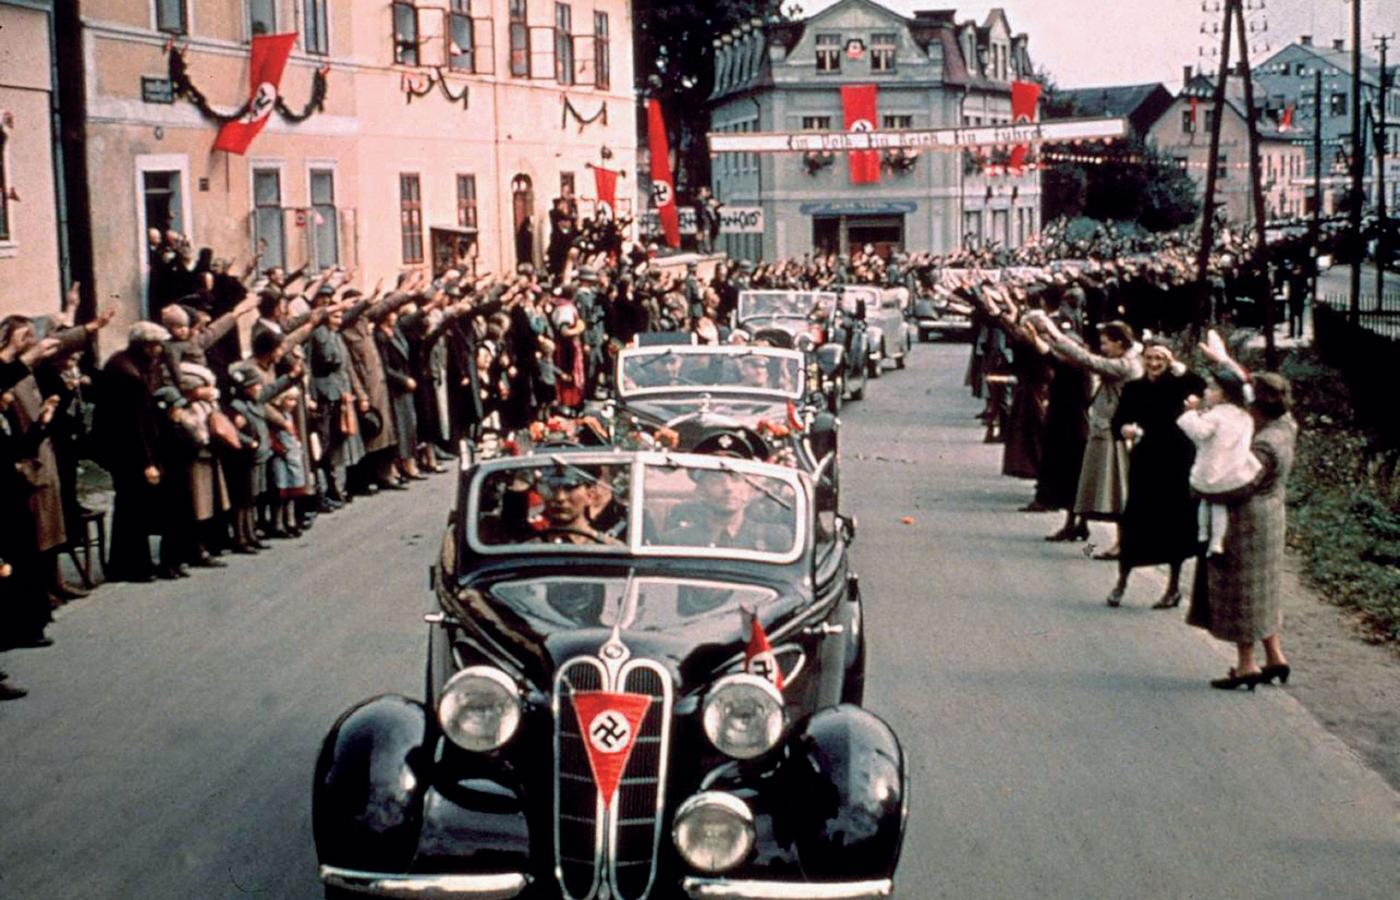 Naziści witani w miasteczku w czeskich Sudetach, okupowanych przez Niemcy od października 1938 r. Fotografia z 1 stycznia 1939 r. – pierwszego dnia roku, w którym wybuchła II wojna światowa.